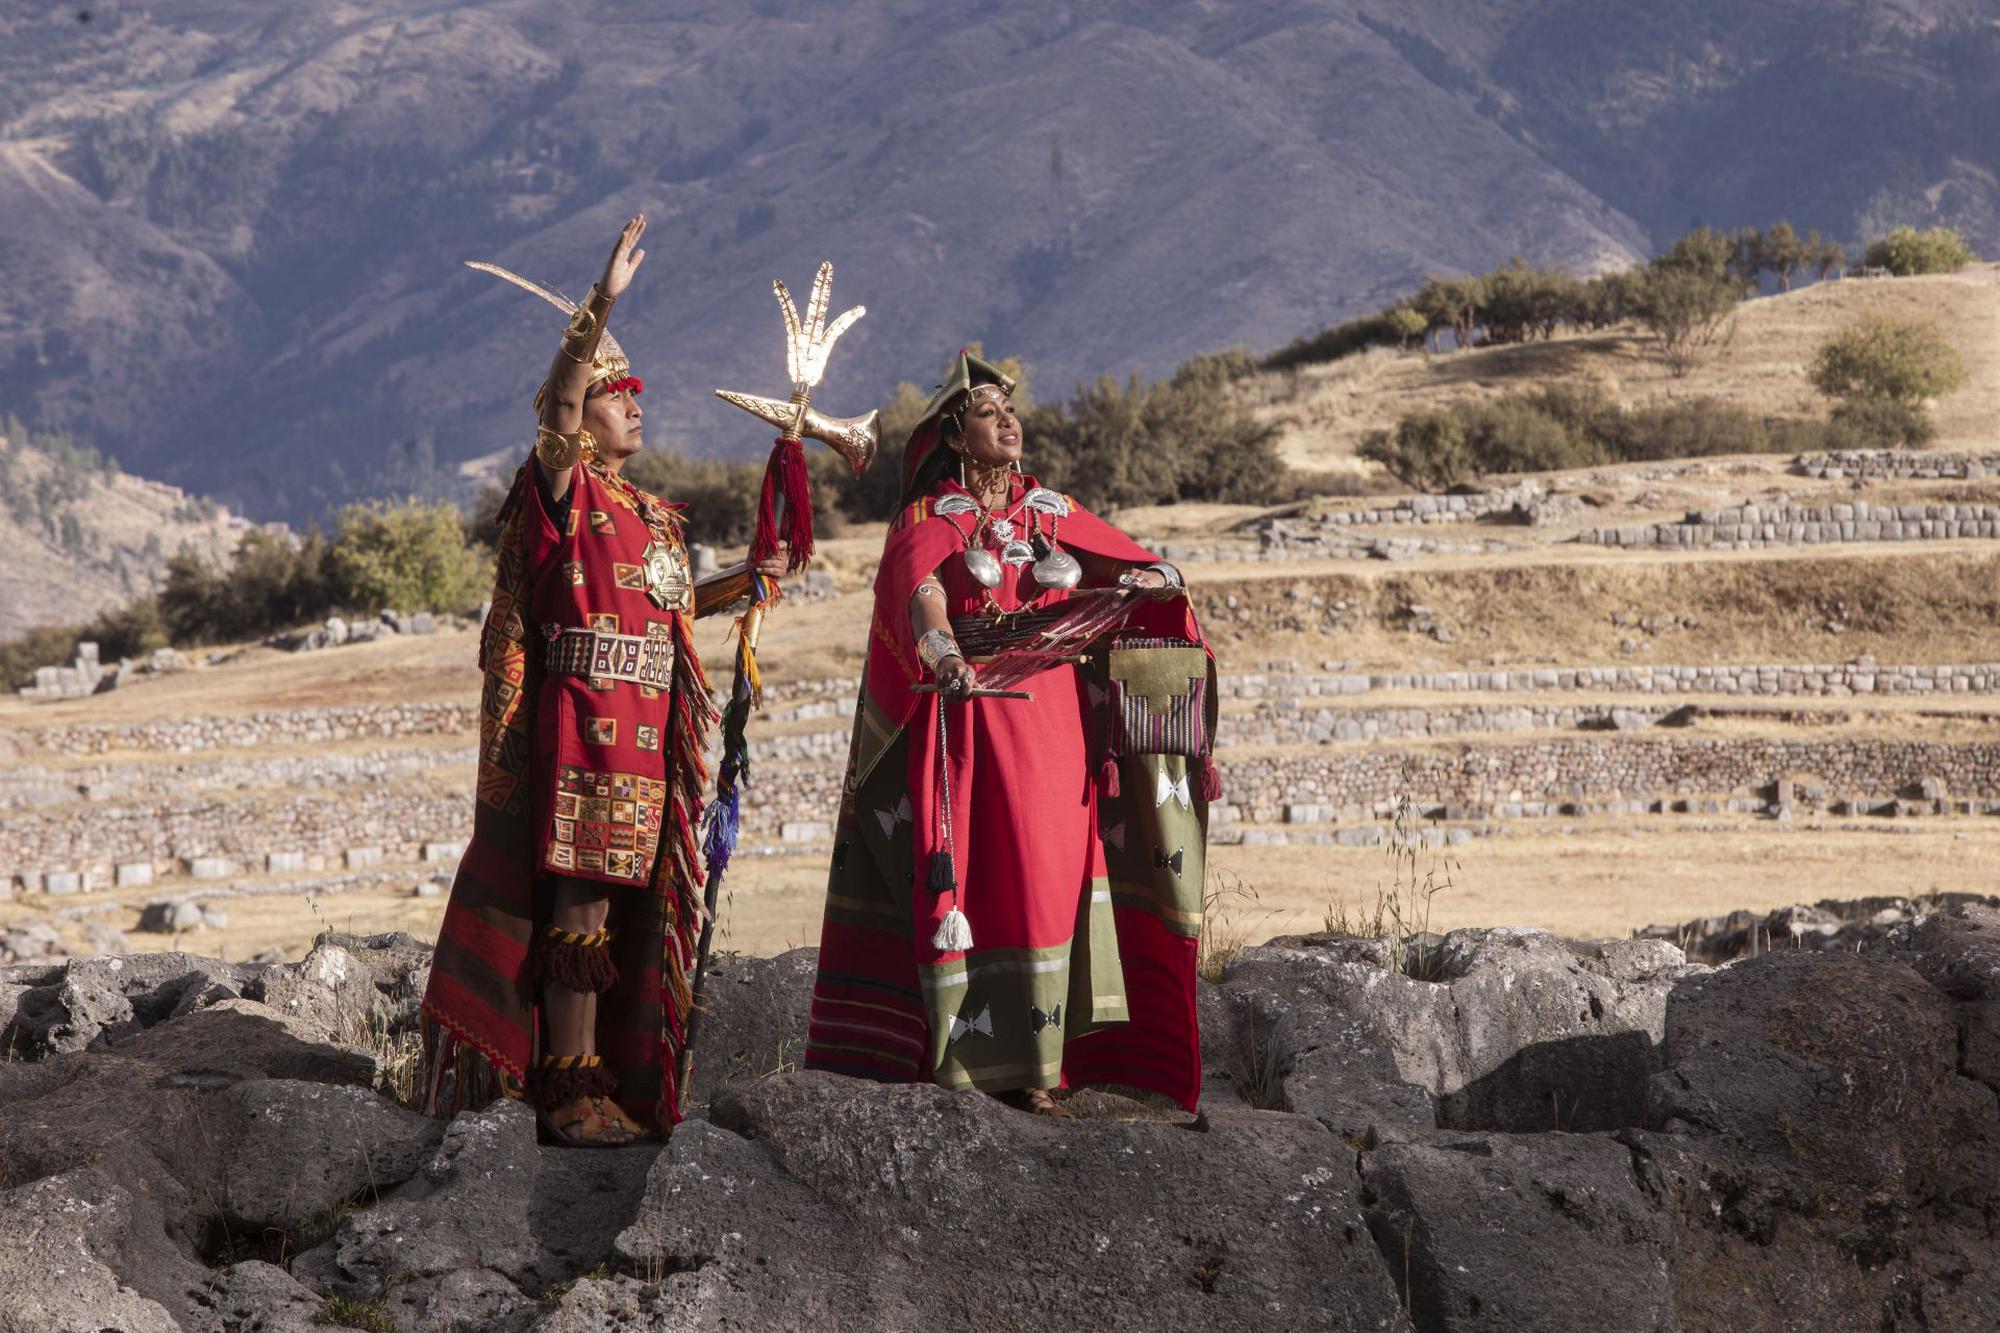 Los Tromes del Bicentenario: peruanos que hacen patria desde lo que aman y les apasiona